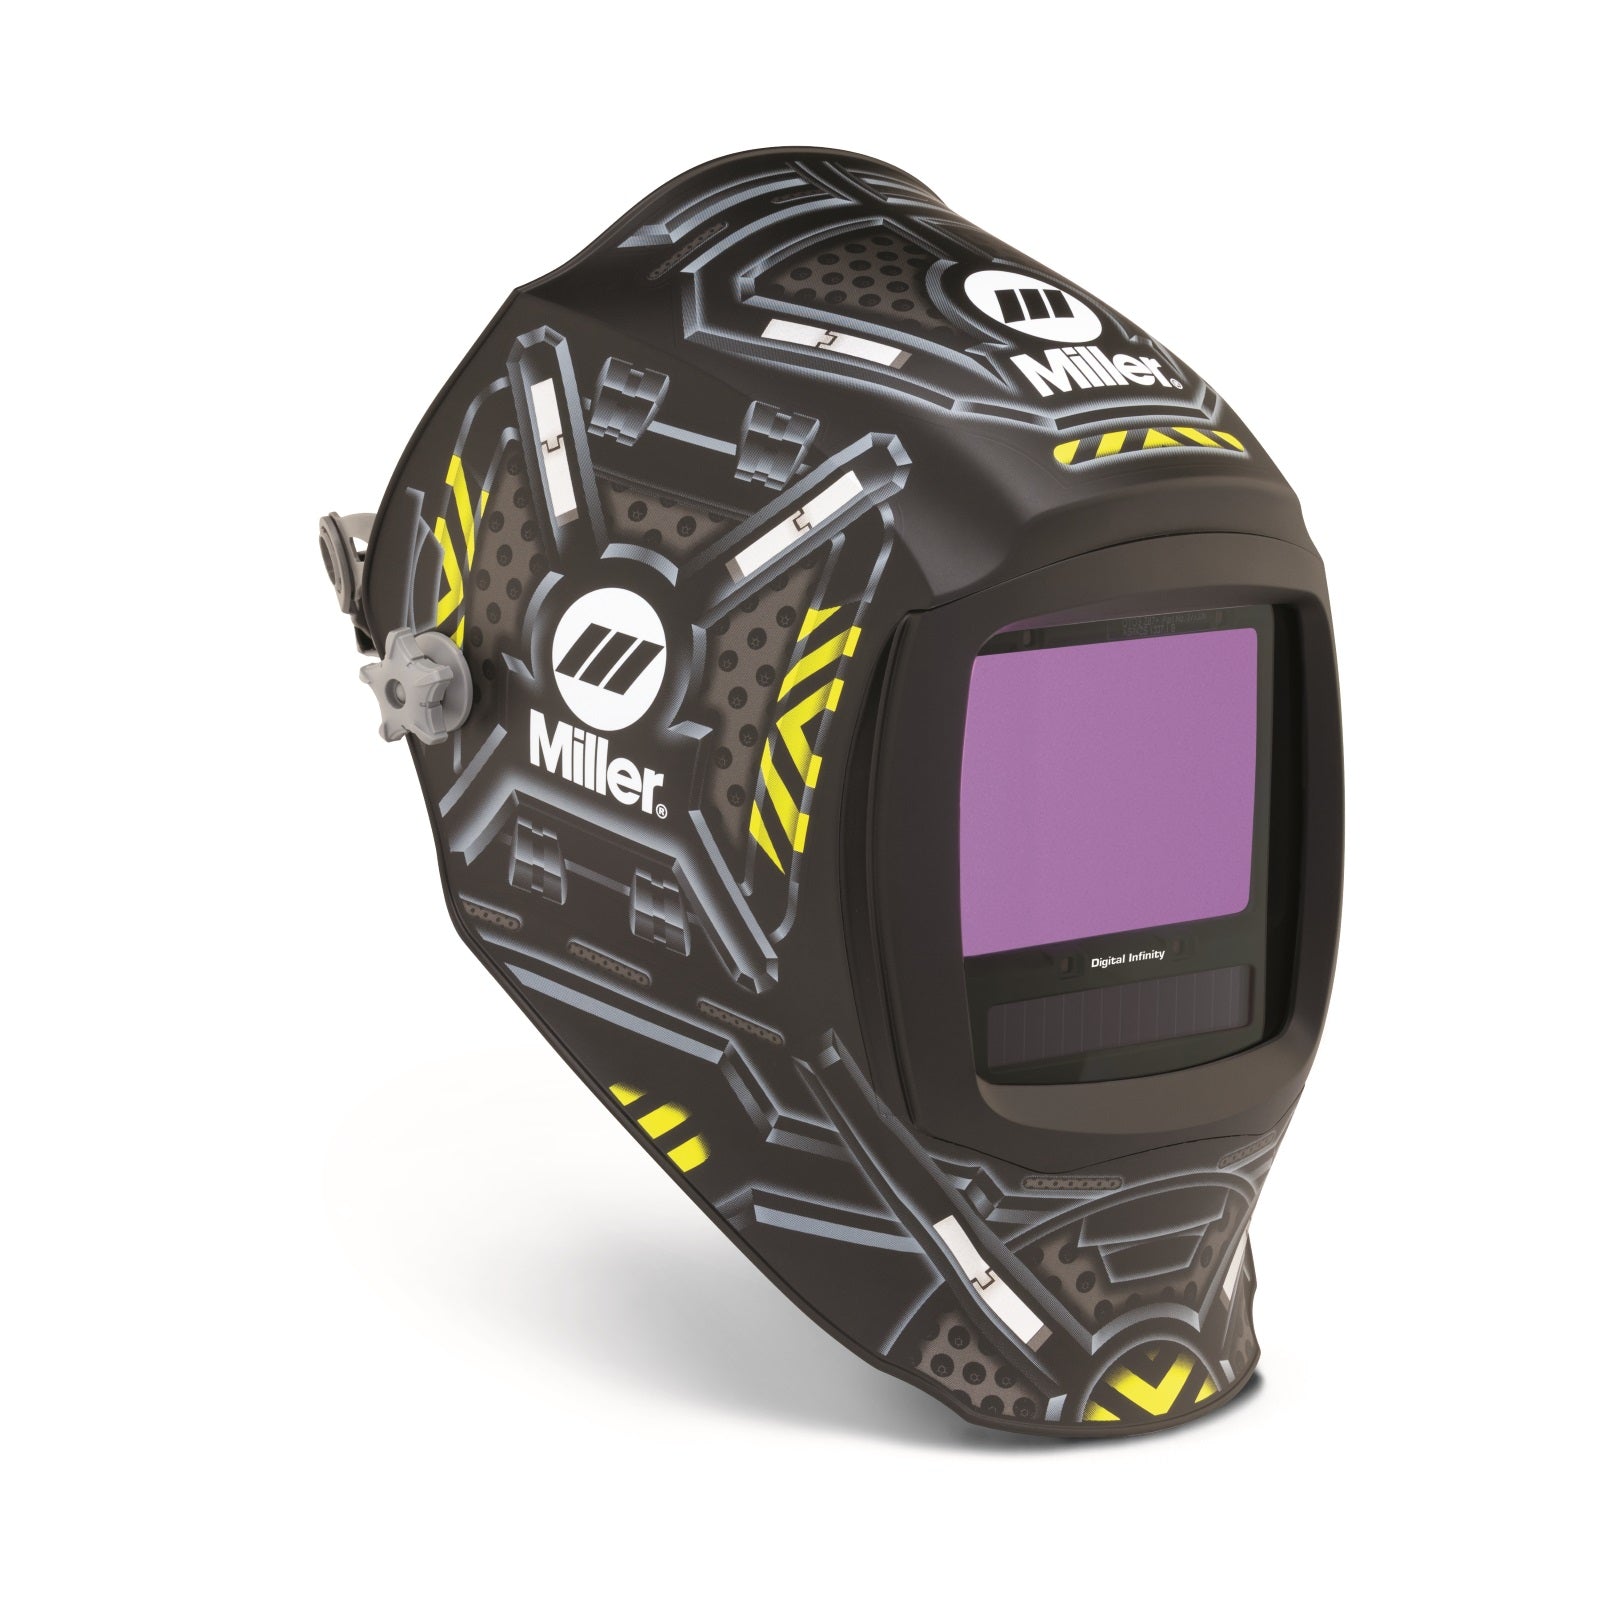 Miller Black Ops Digital Infinity Auto Darkening Welding Helmet (280047)